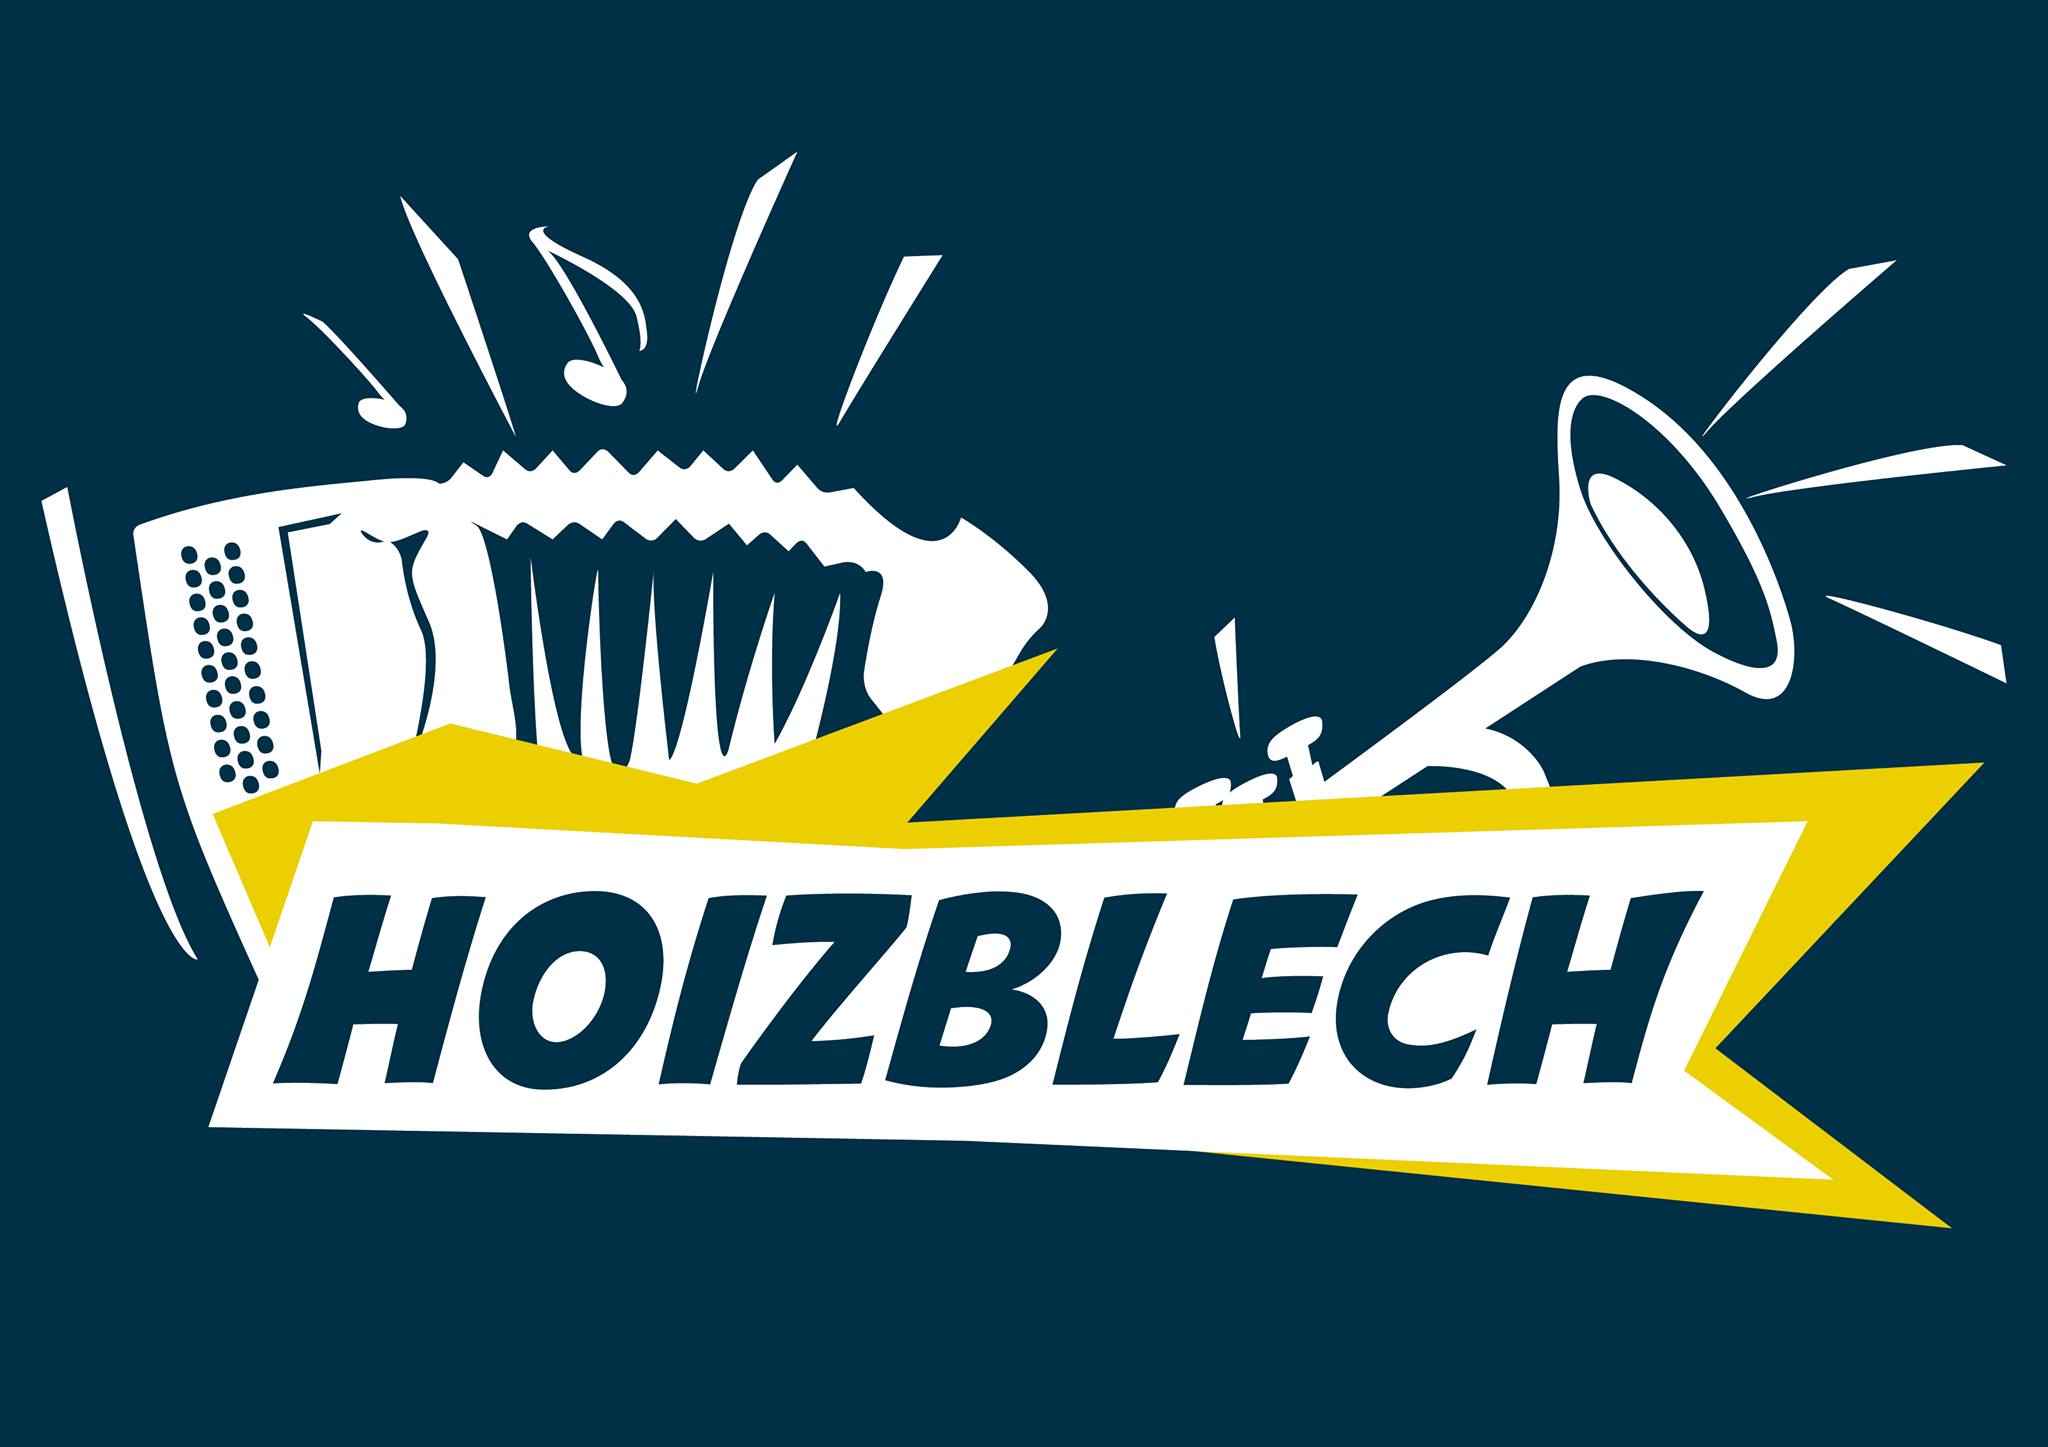 Hoizblech